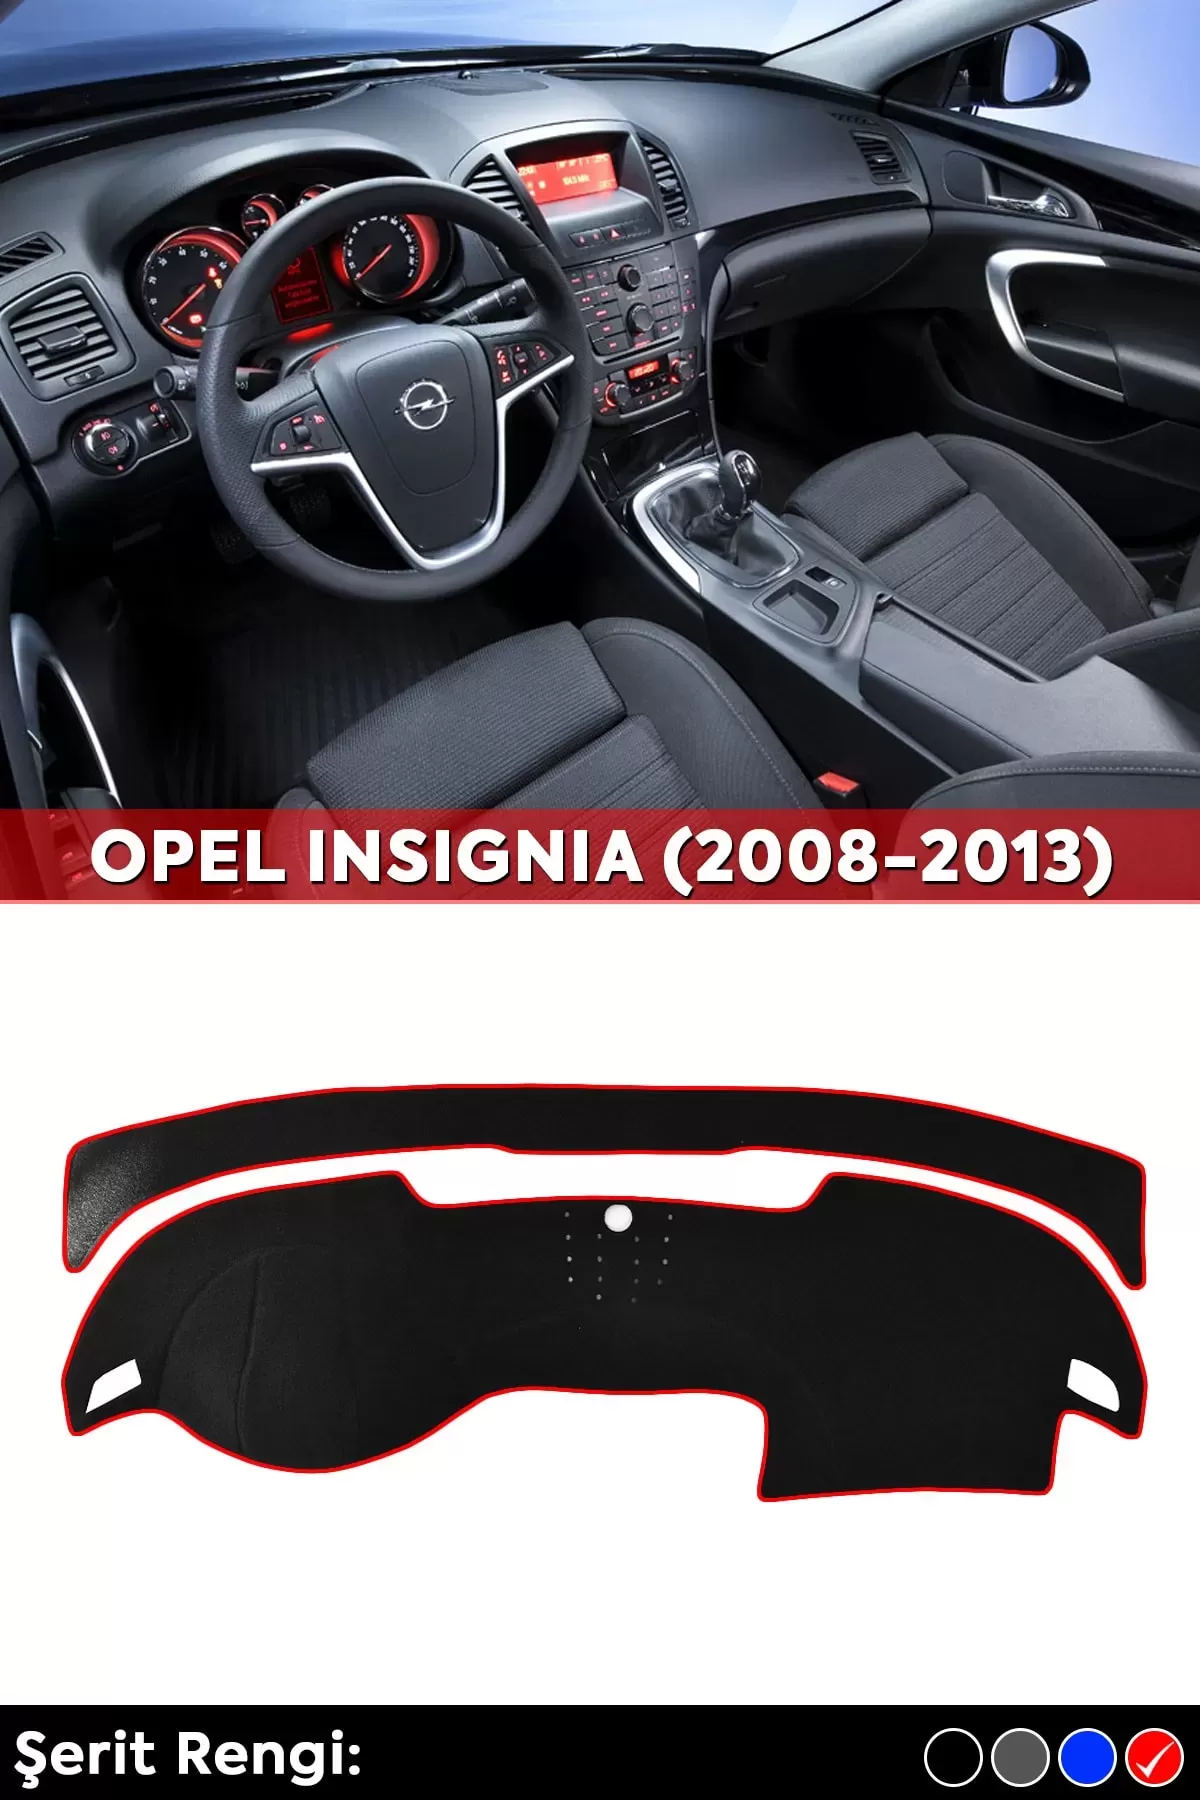 Opel Insıgnıa (2008-2013) 3d Torpido Koruma Kılıfı - Ön Göğüs Kaplama - Kırmızı Şerit